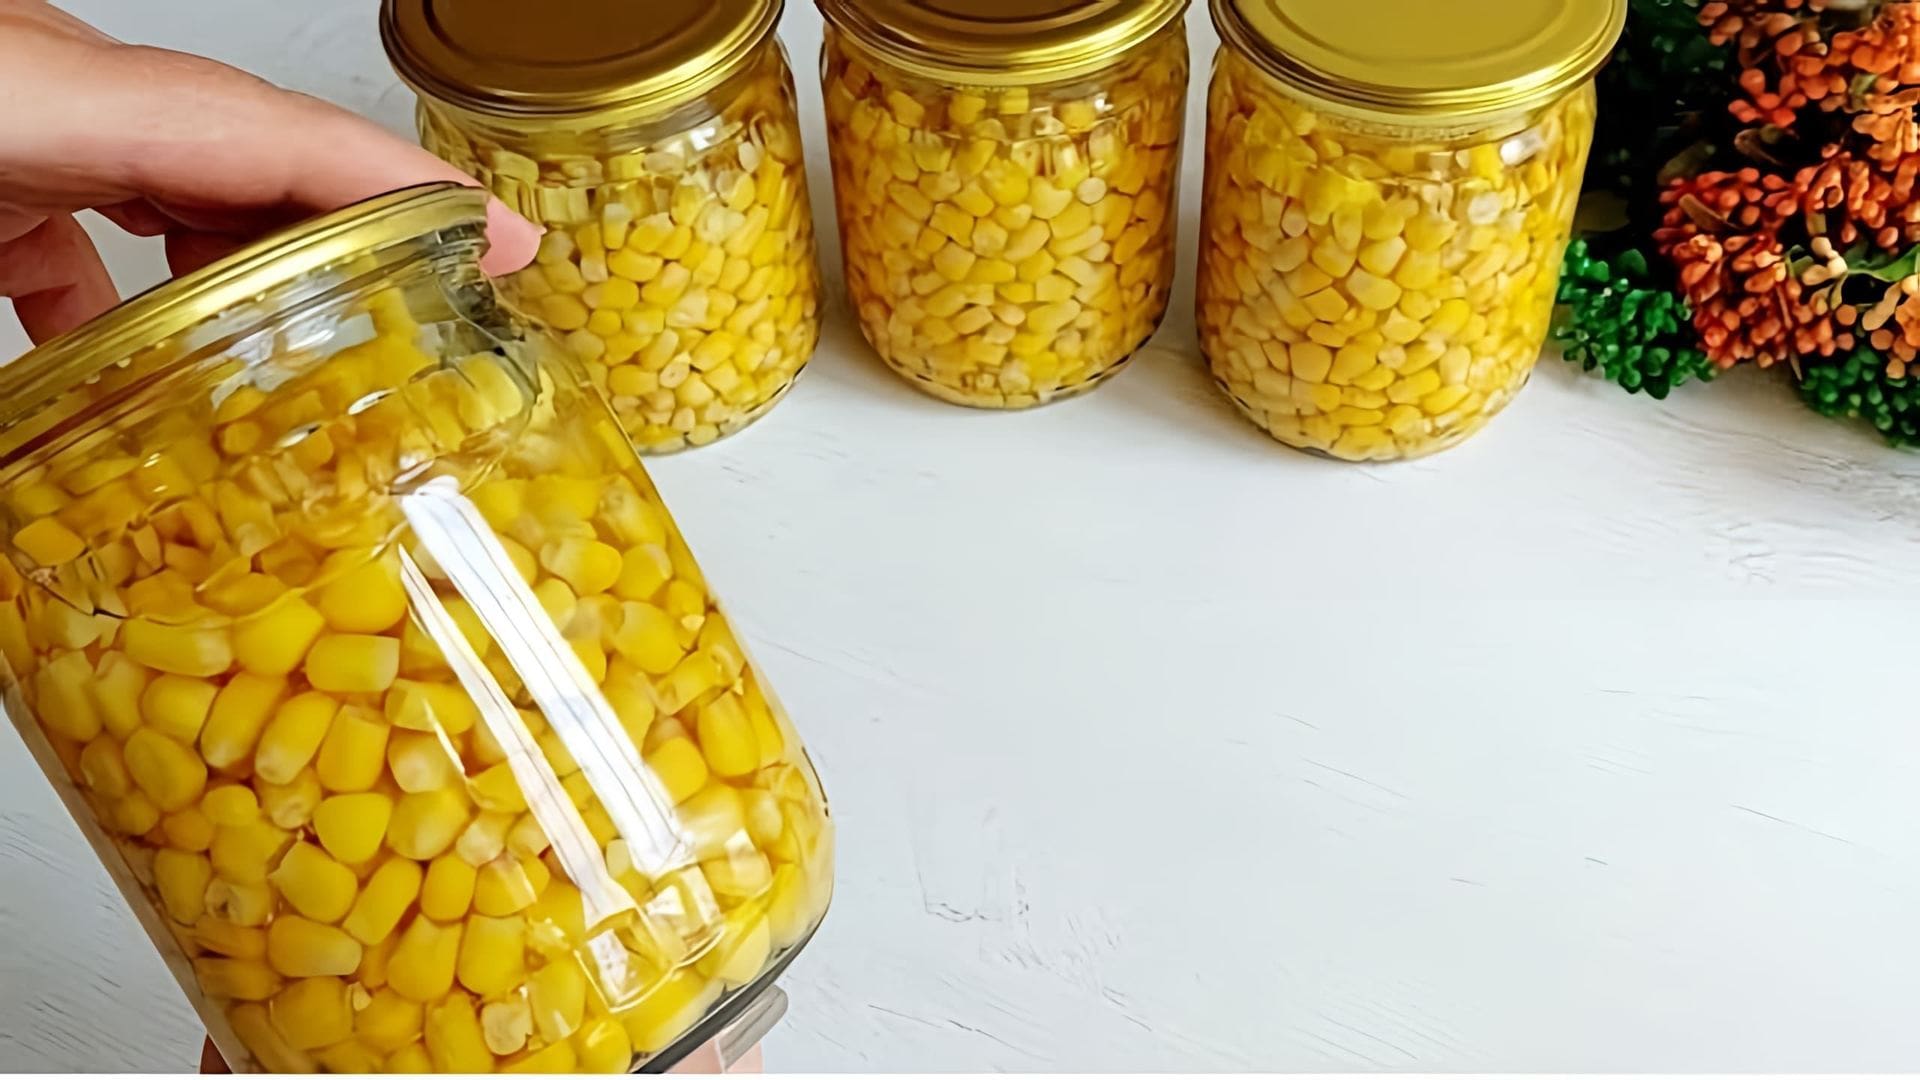 В данном видео демонстрируется процесс консервирования кукурузы в домашних условиях